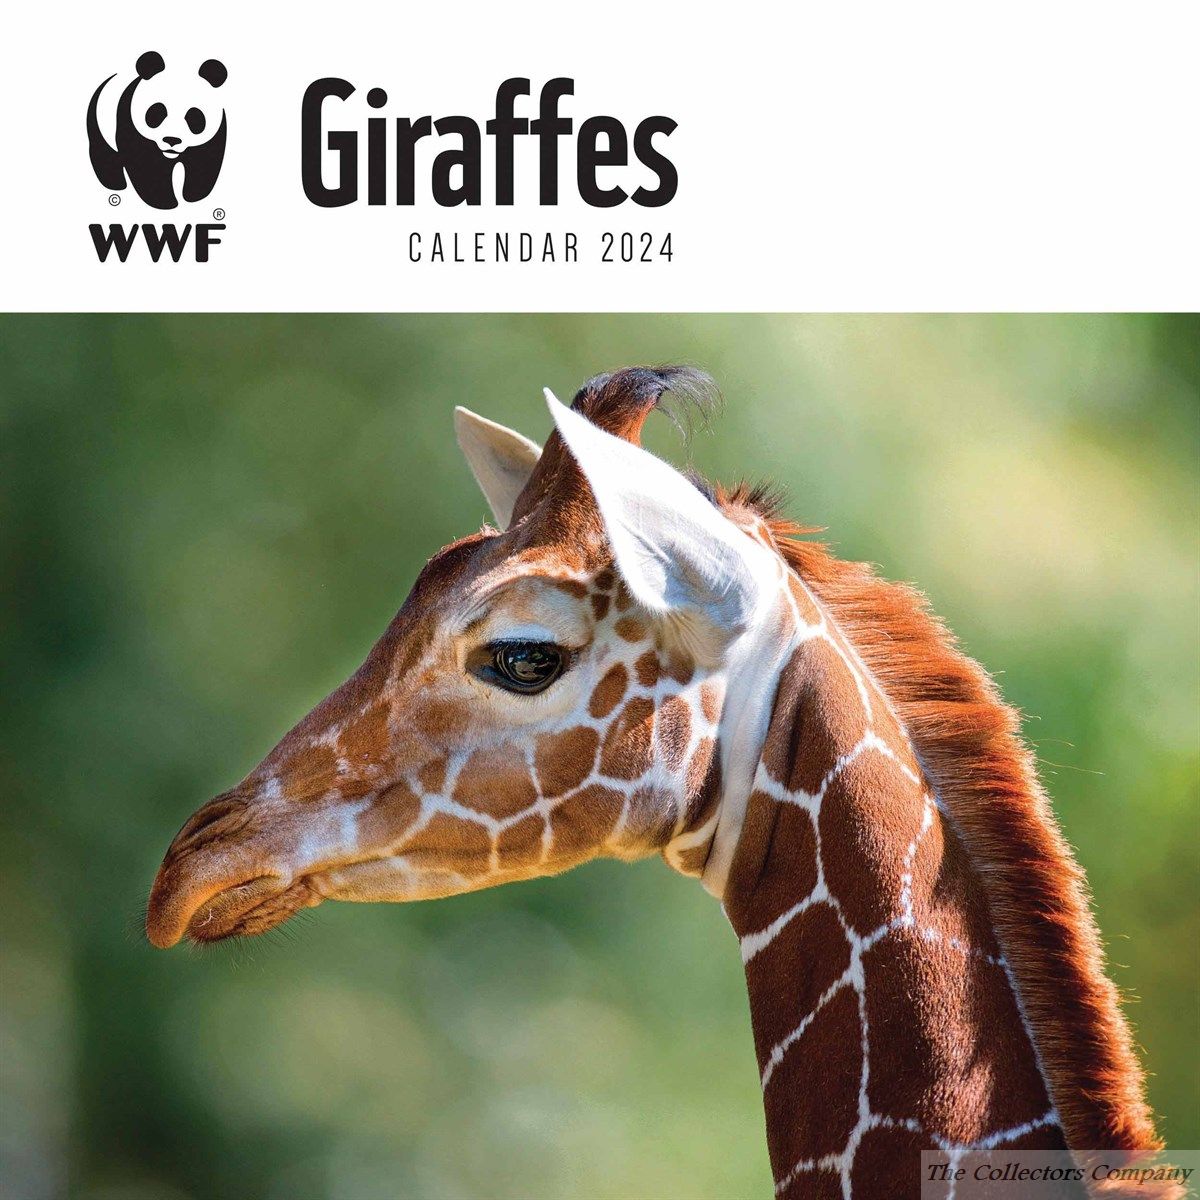 WWF Giraffes 2024 Calendar 240221